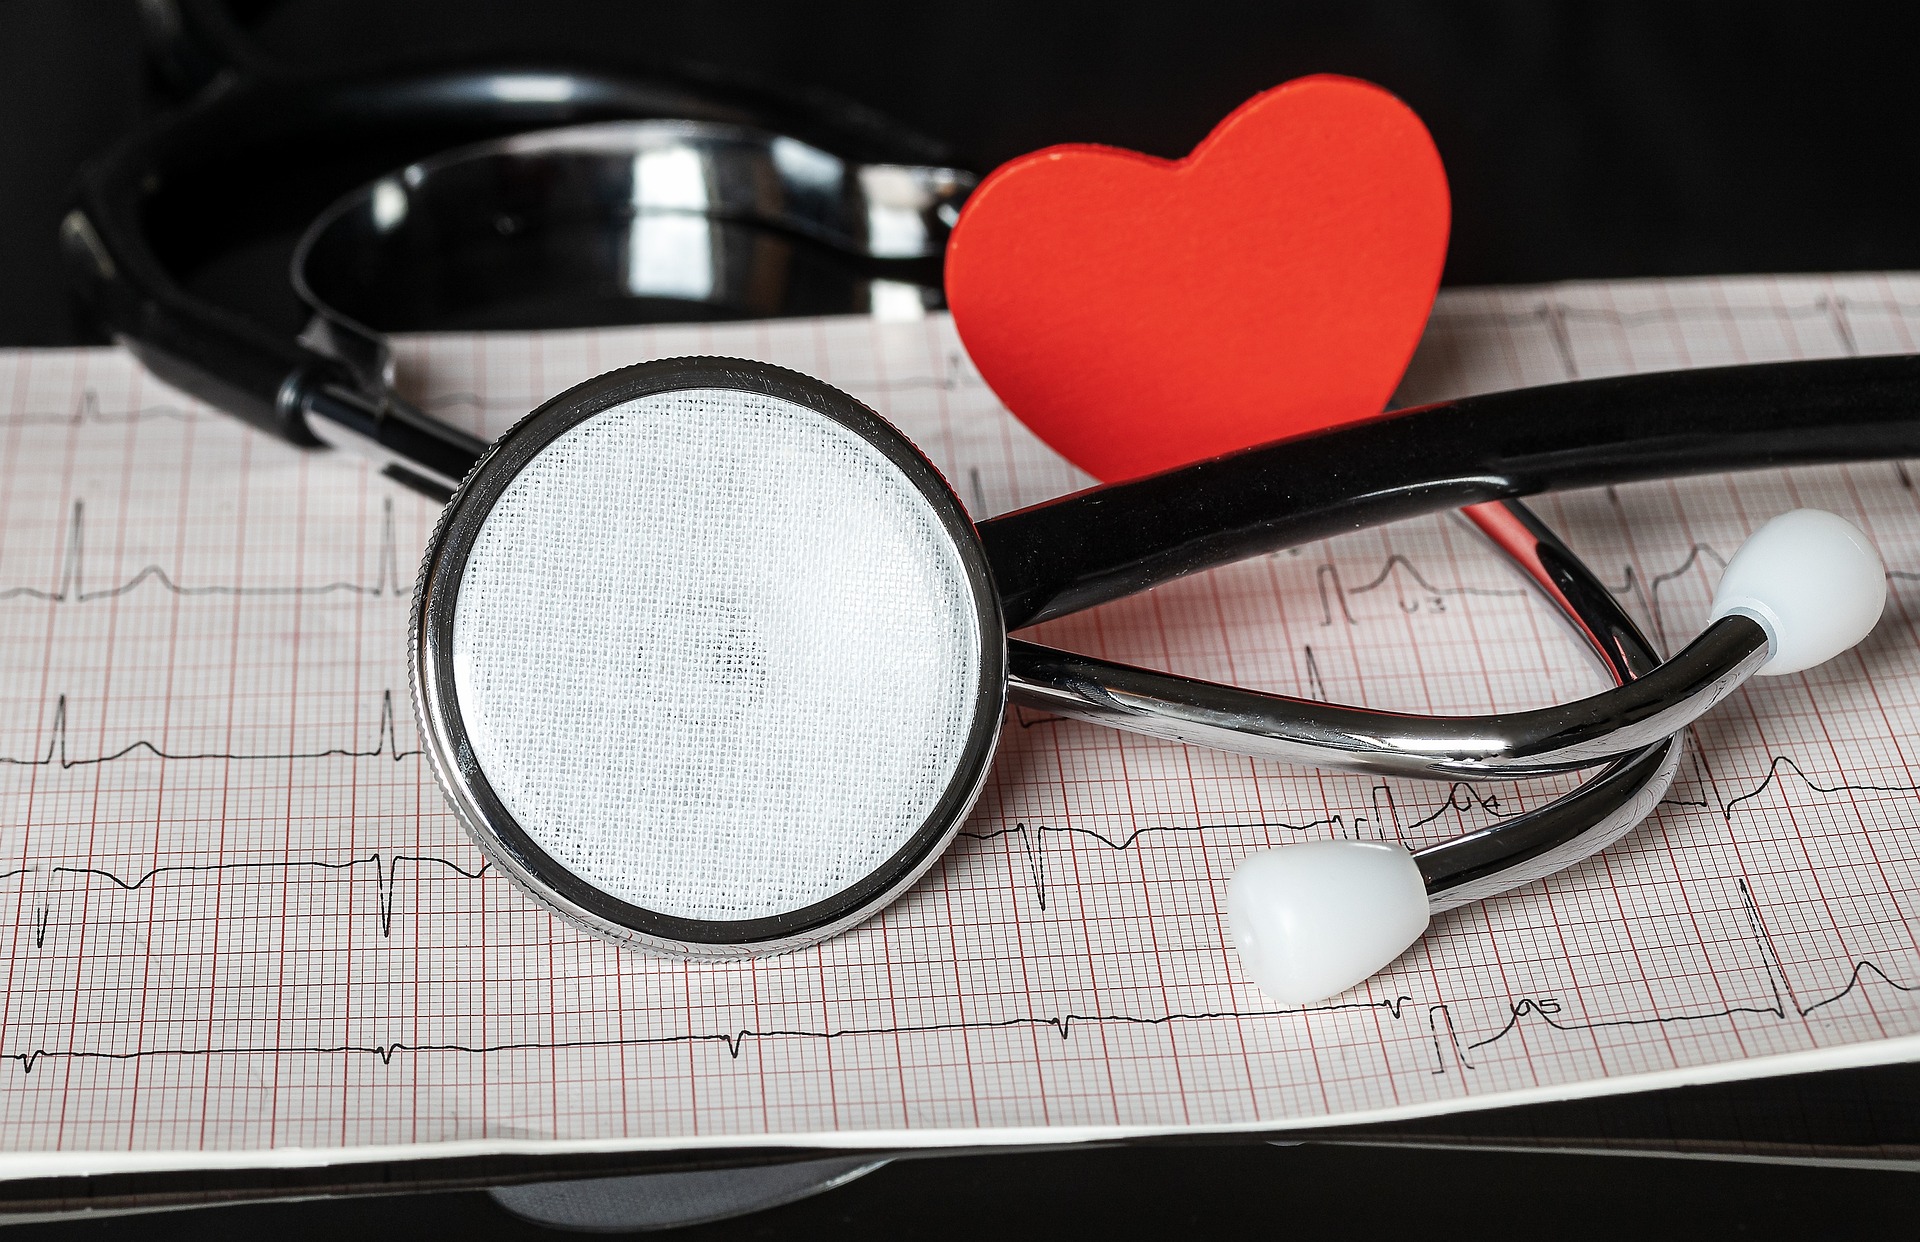 Telemedicina. Il progetto “scompenso cardiaco” viaggia a gonfie vele